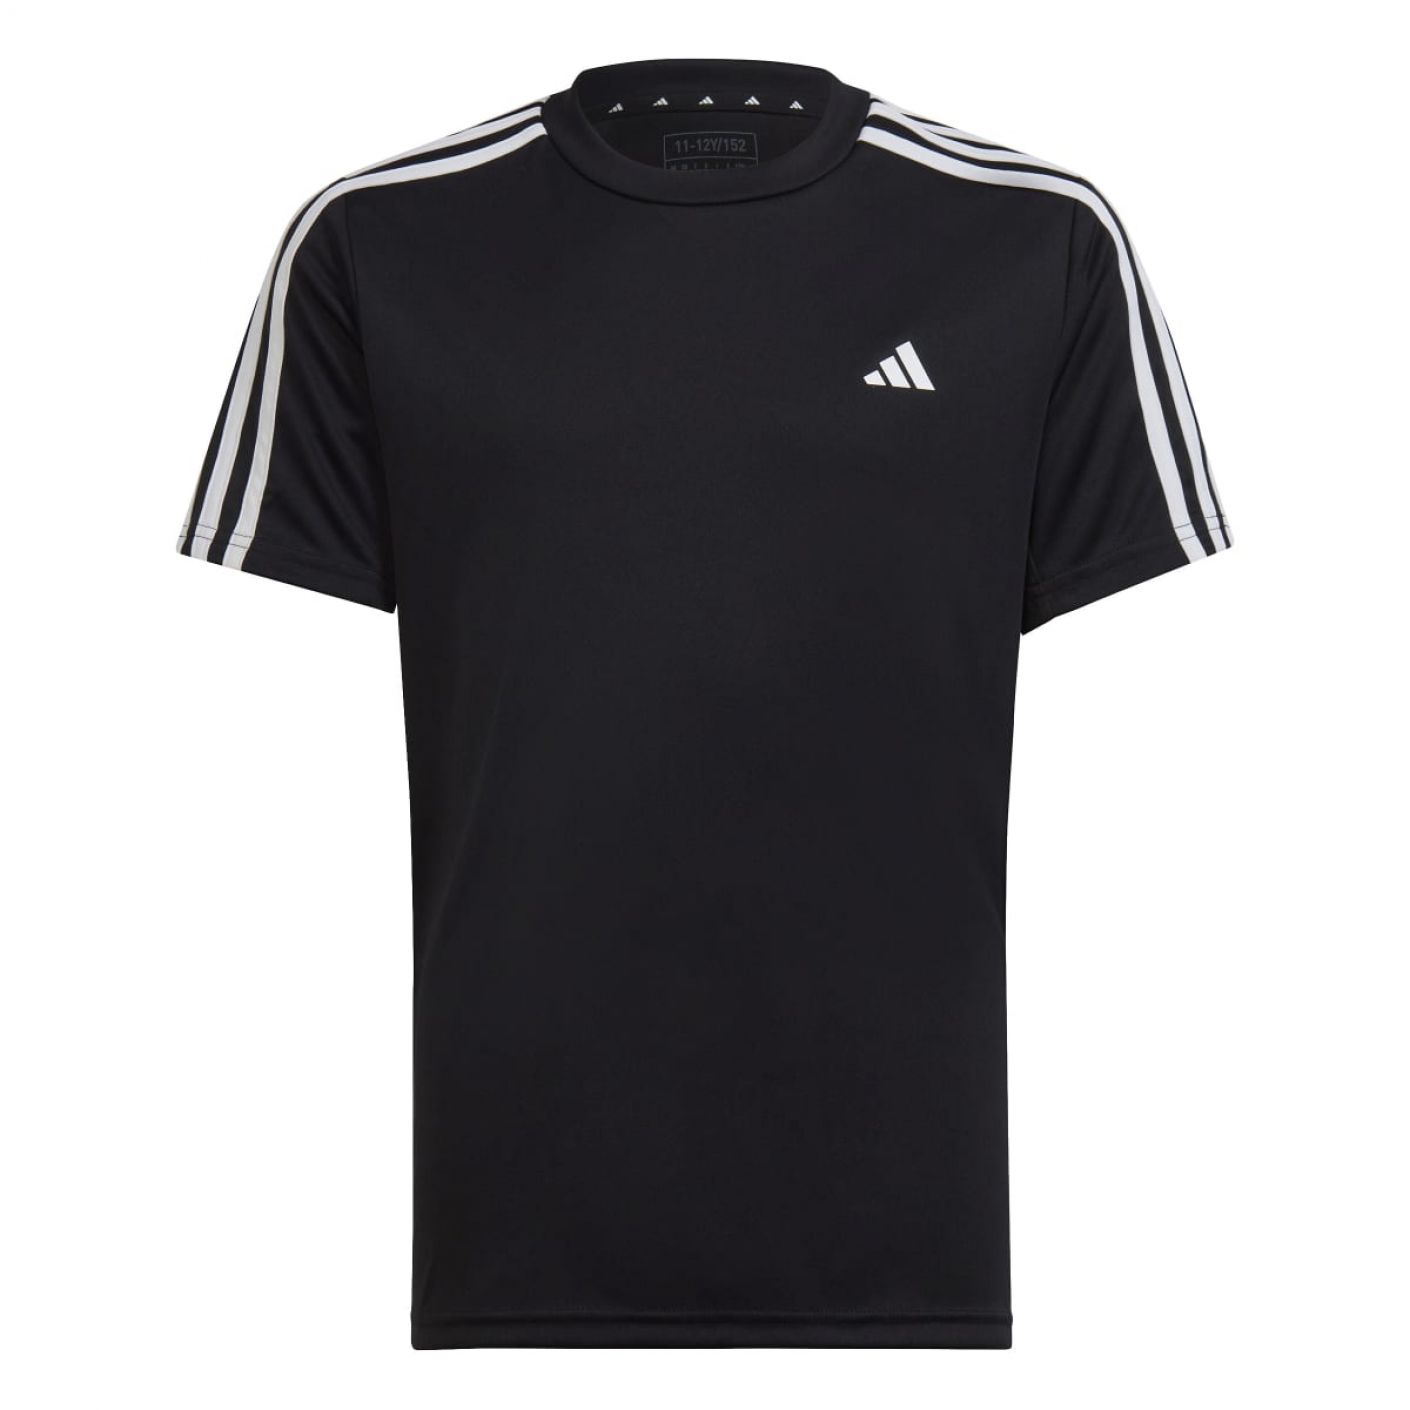 Adidas T-Shirts 3Stripes Junior Black/White